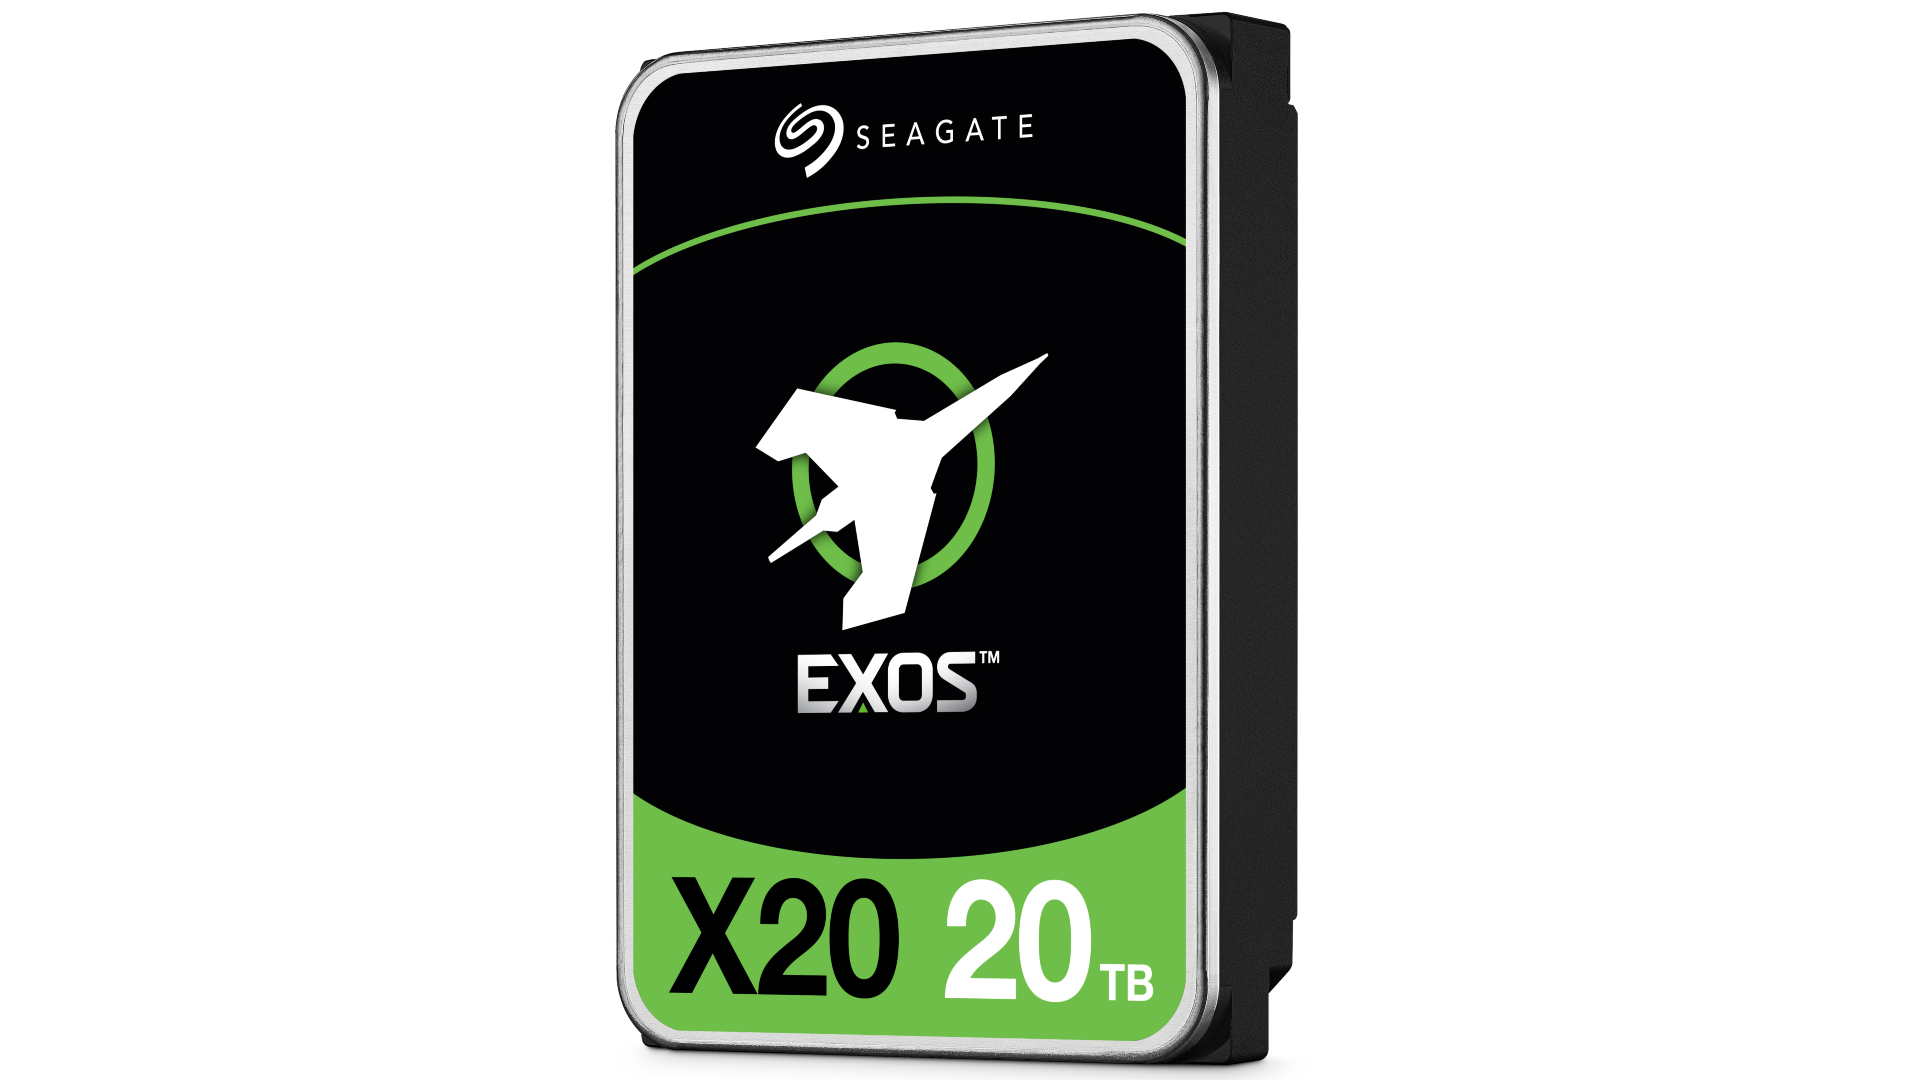 Seagate Exos X20